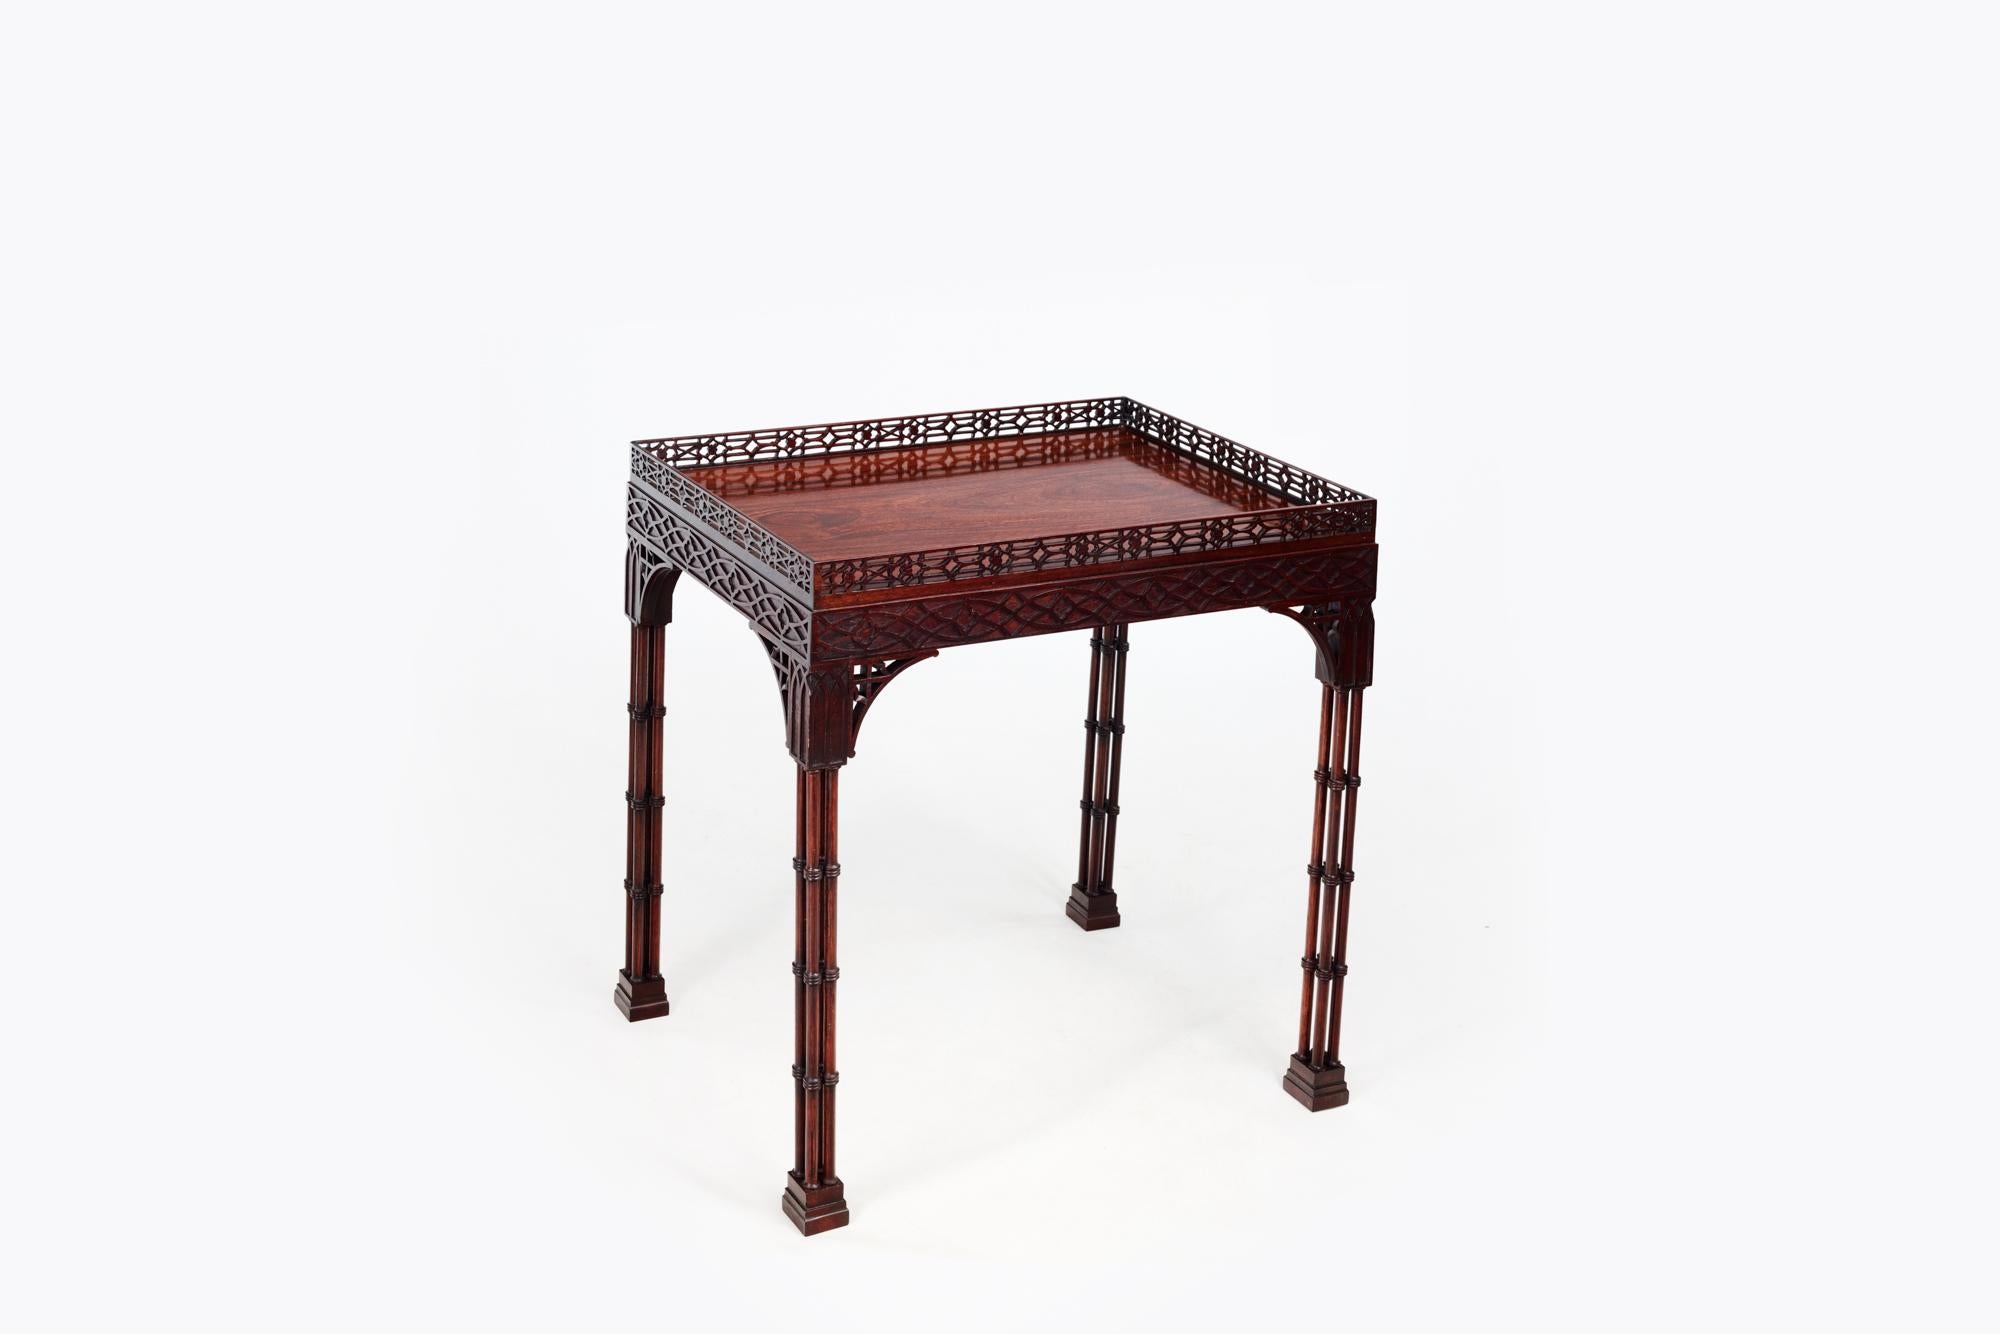 Mahagoni-Silbertisch aus dem 19. Jahrhundert im chinesischen Chippendale-Stil. Die durchbrochenen Eckkonsolen tragen ungewöhnliche Säulenbeine und enden auf Blockfüßen. Die rechteckige Platte ist an allen vier Seiten mit einem blinden Laubsägefries